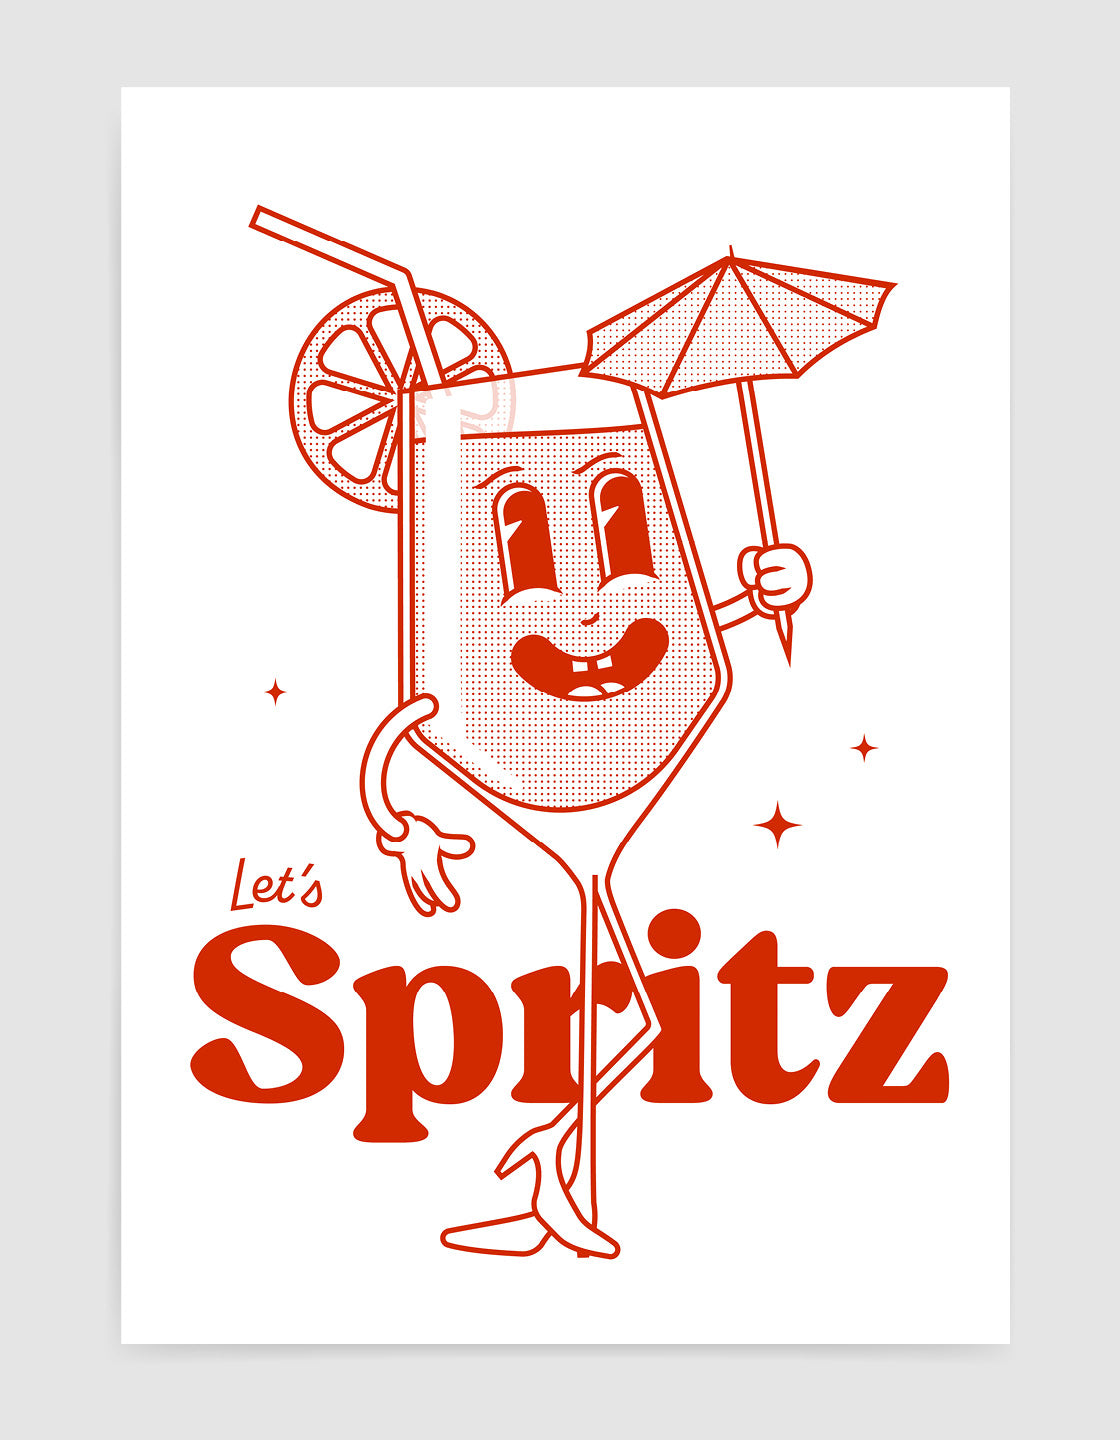 Retro style Spritz